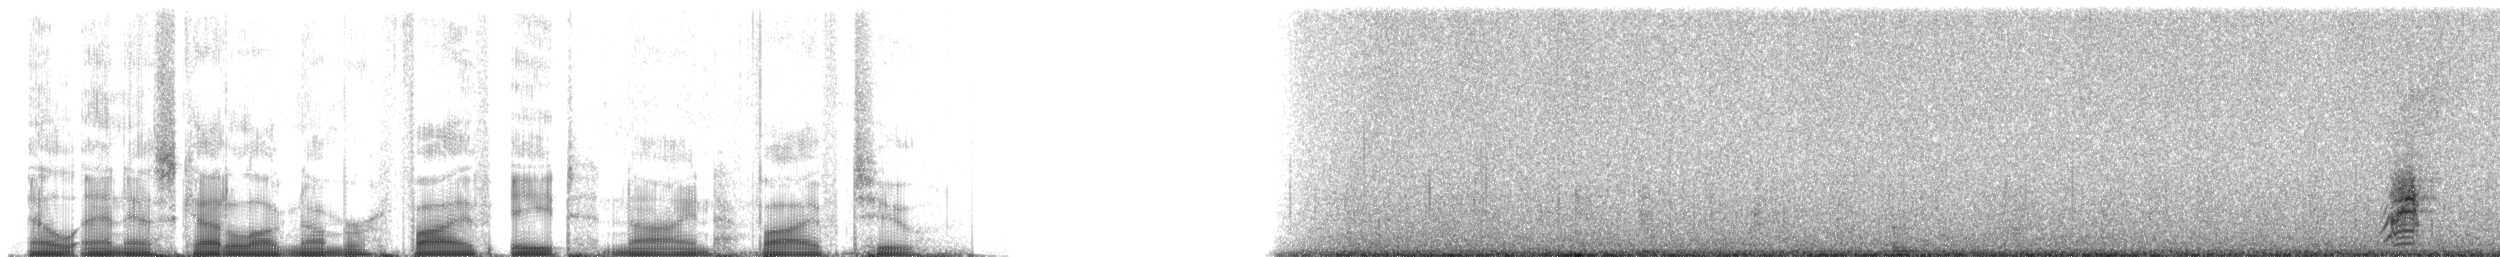 Андский чирок (altipetens) - ML58952